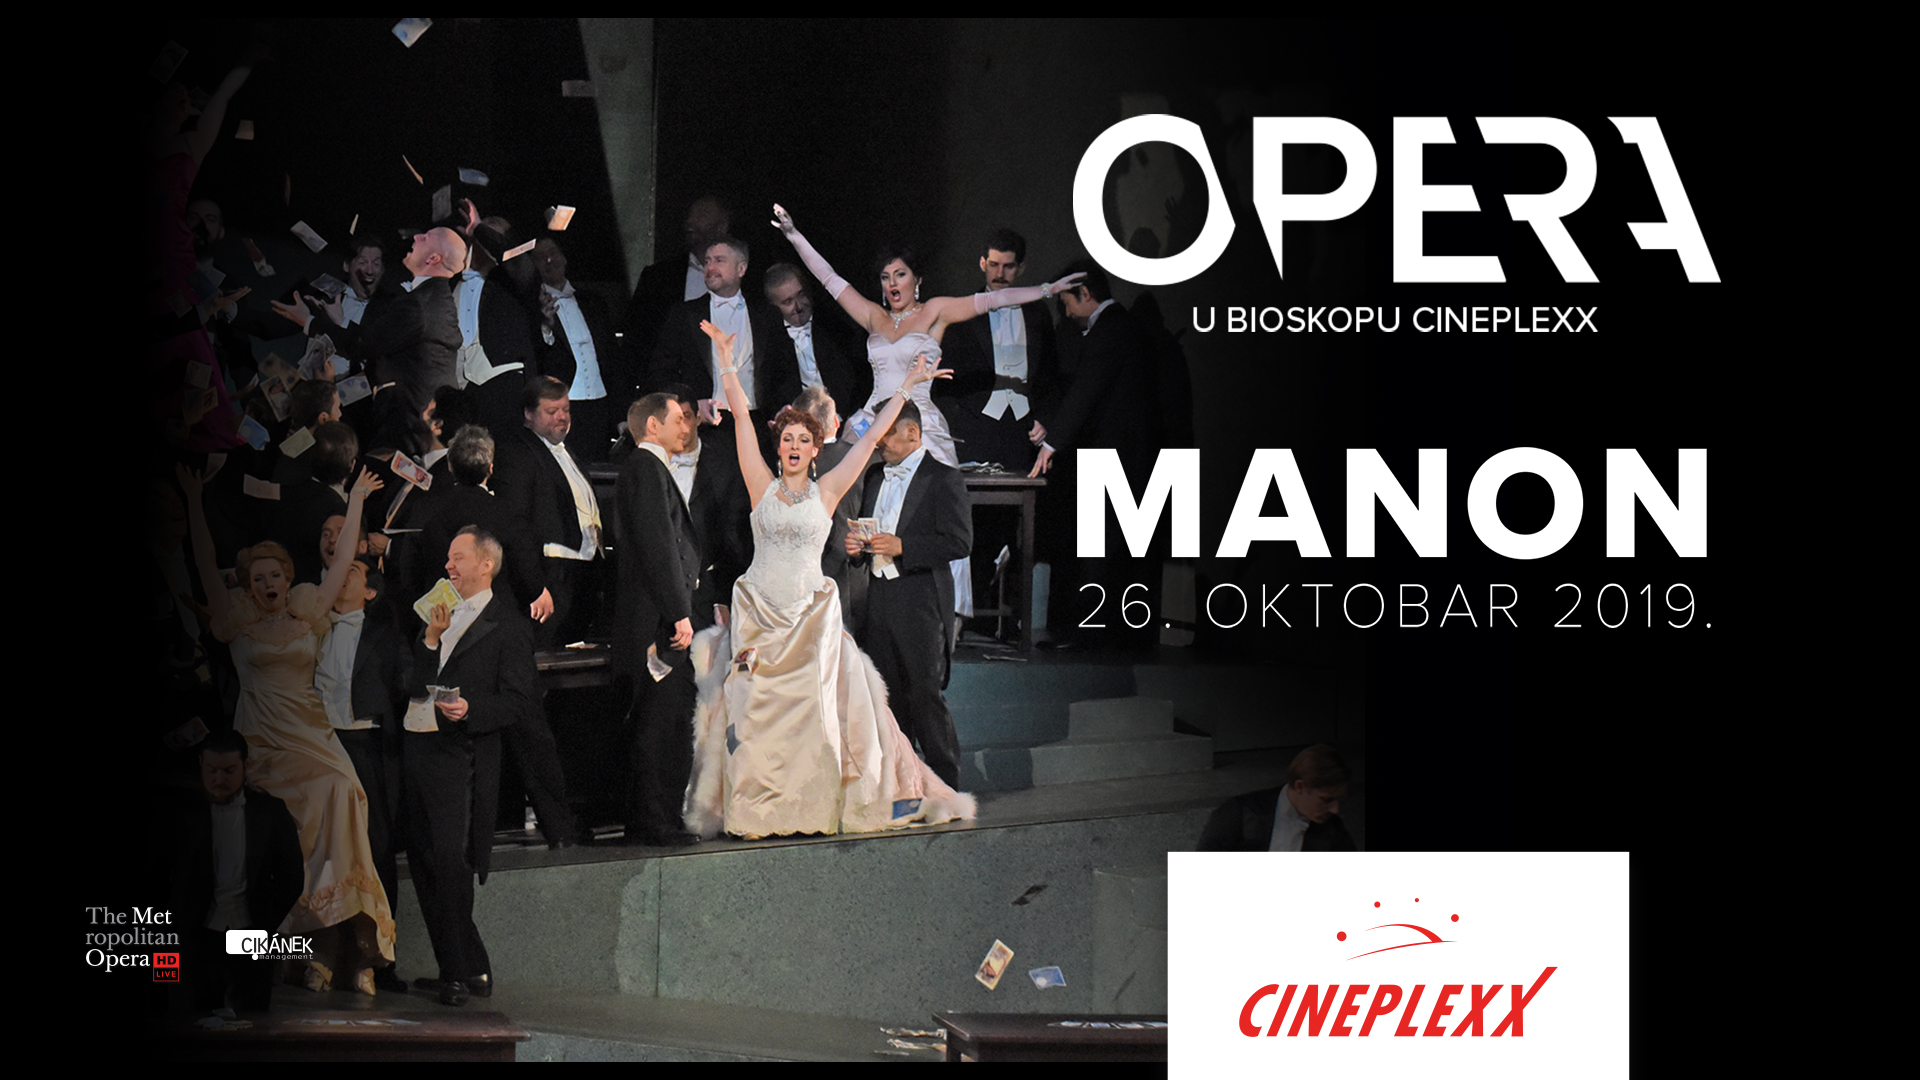 Opera „Manon“ je prvi put izvedena 1884. godine, foto: Promo/Cineplexx